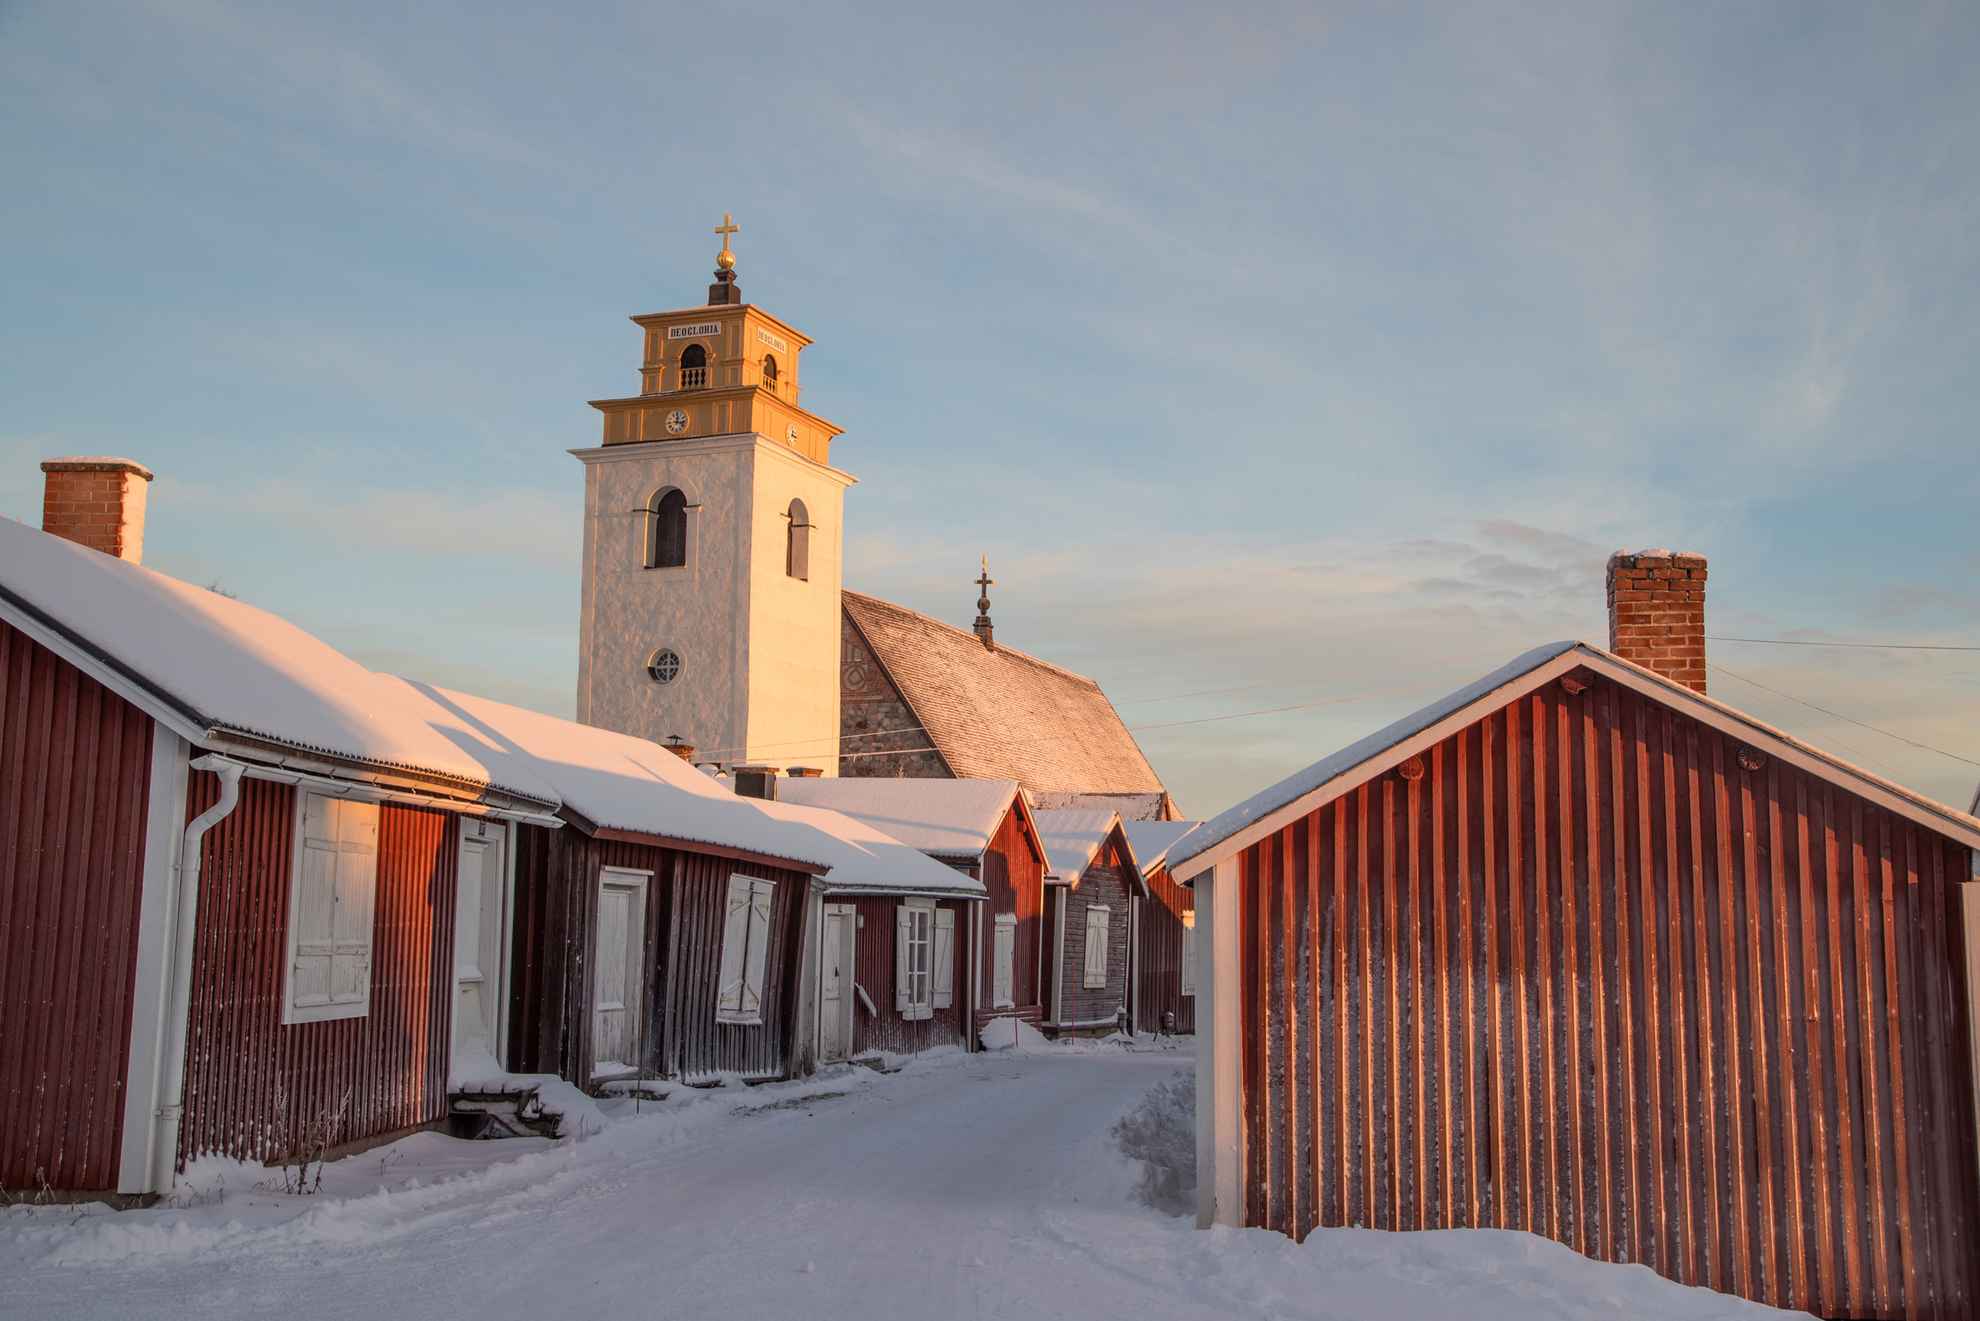 Rote Häuschen und der weiße Kirchturm in der Kirchenstadt Gammelstad im Winter.